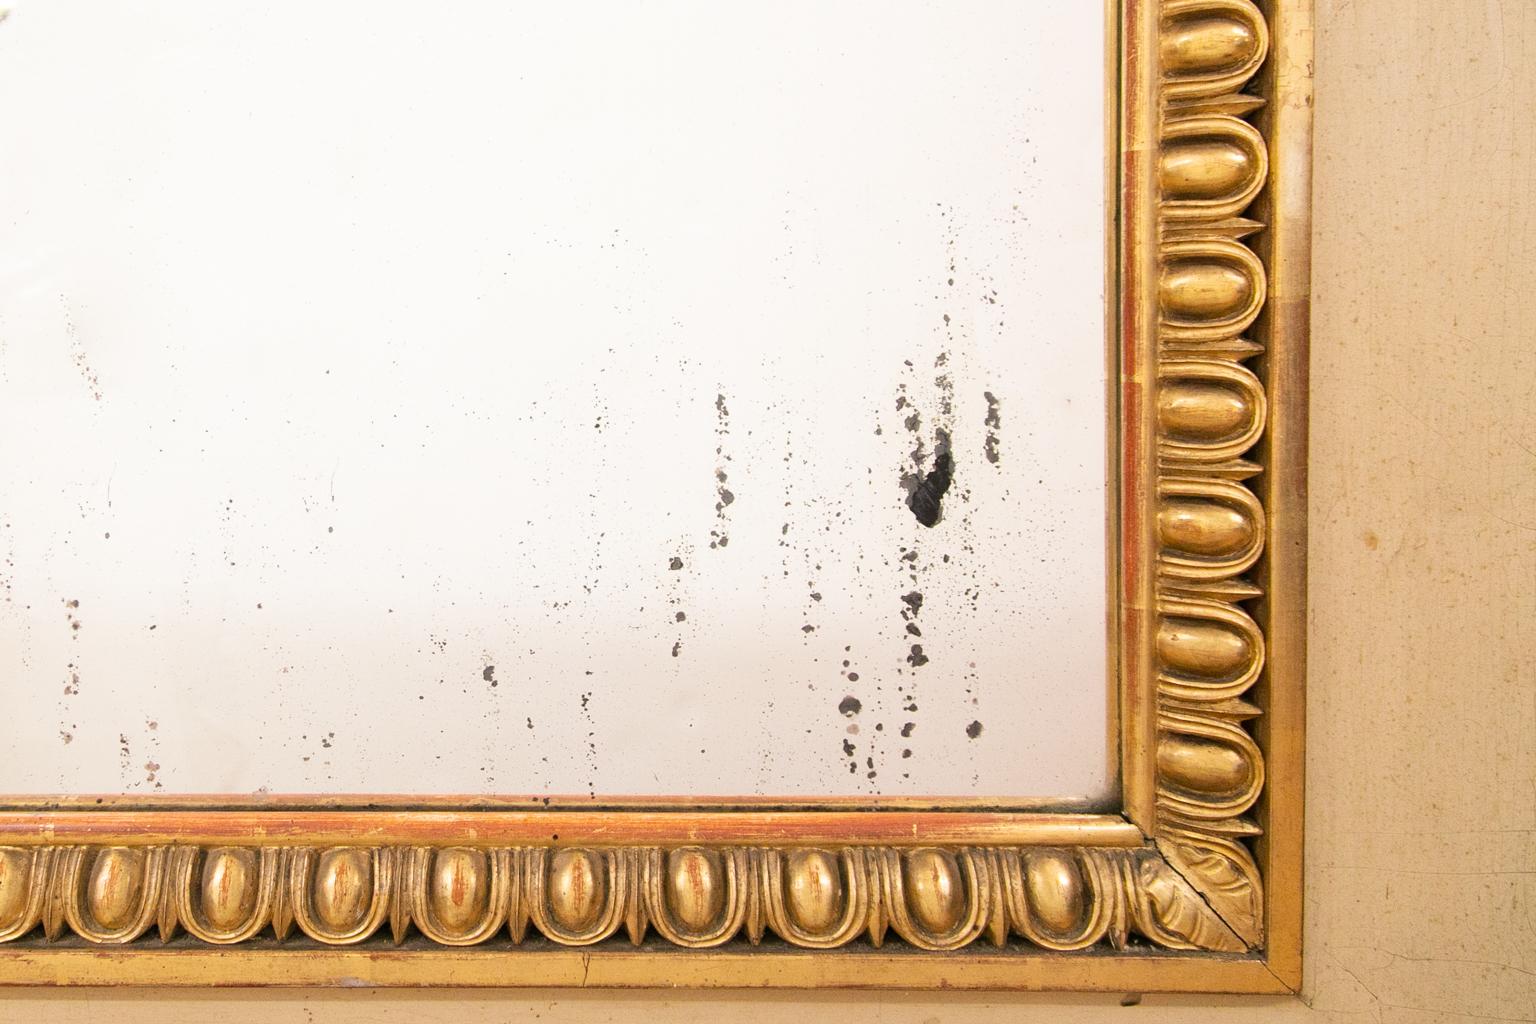 Grand miroir doré français, la couleur de base est crème avec des moulures dorées en forme d'œuf et de fléchette autour du miroir. Les côtés ont des colonnes tournées et anglées avec des feuilles d'acanthe près de la base.
       